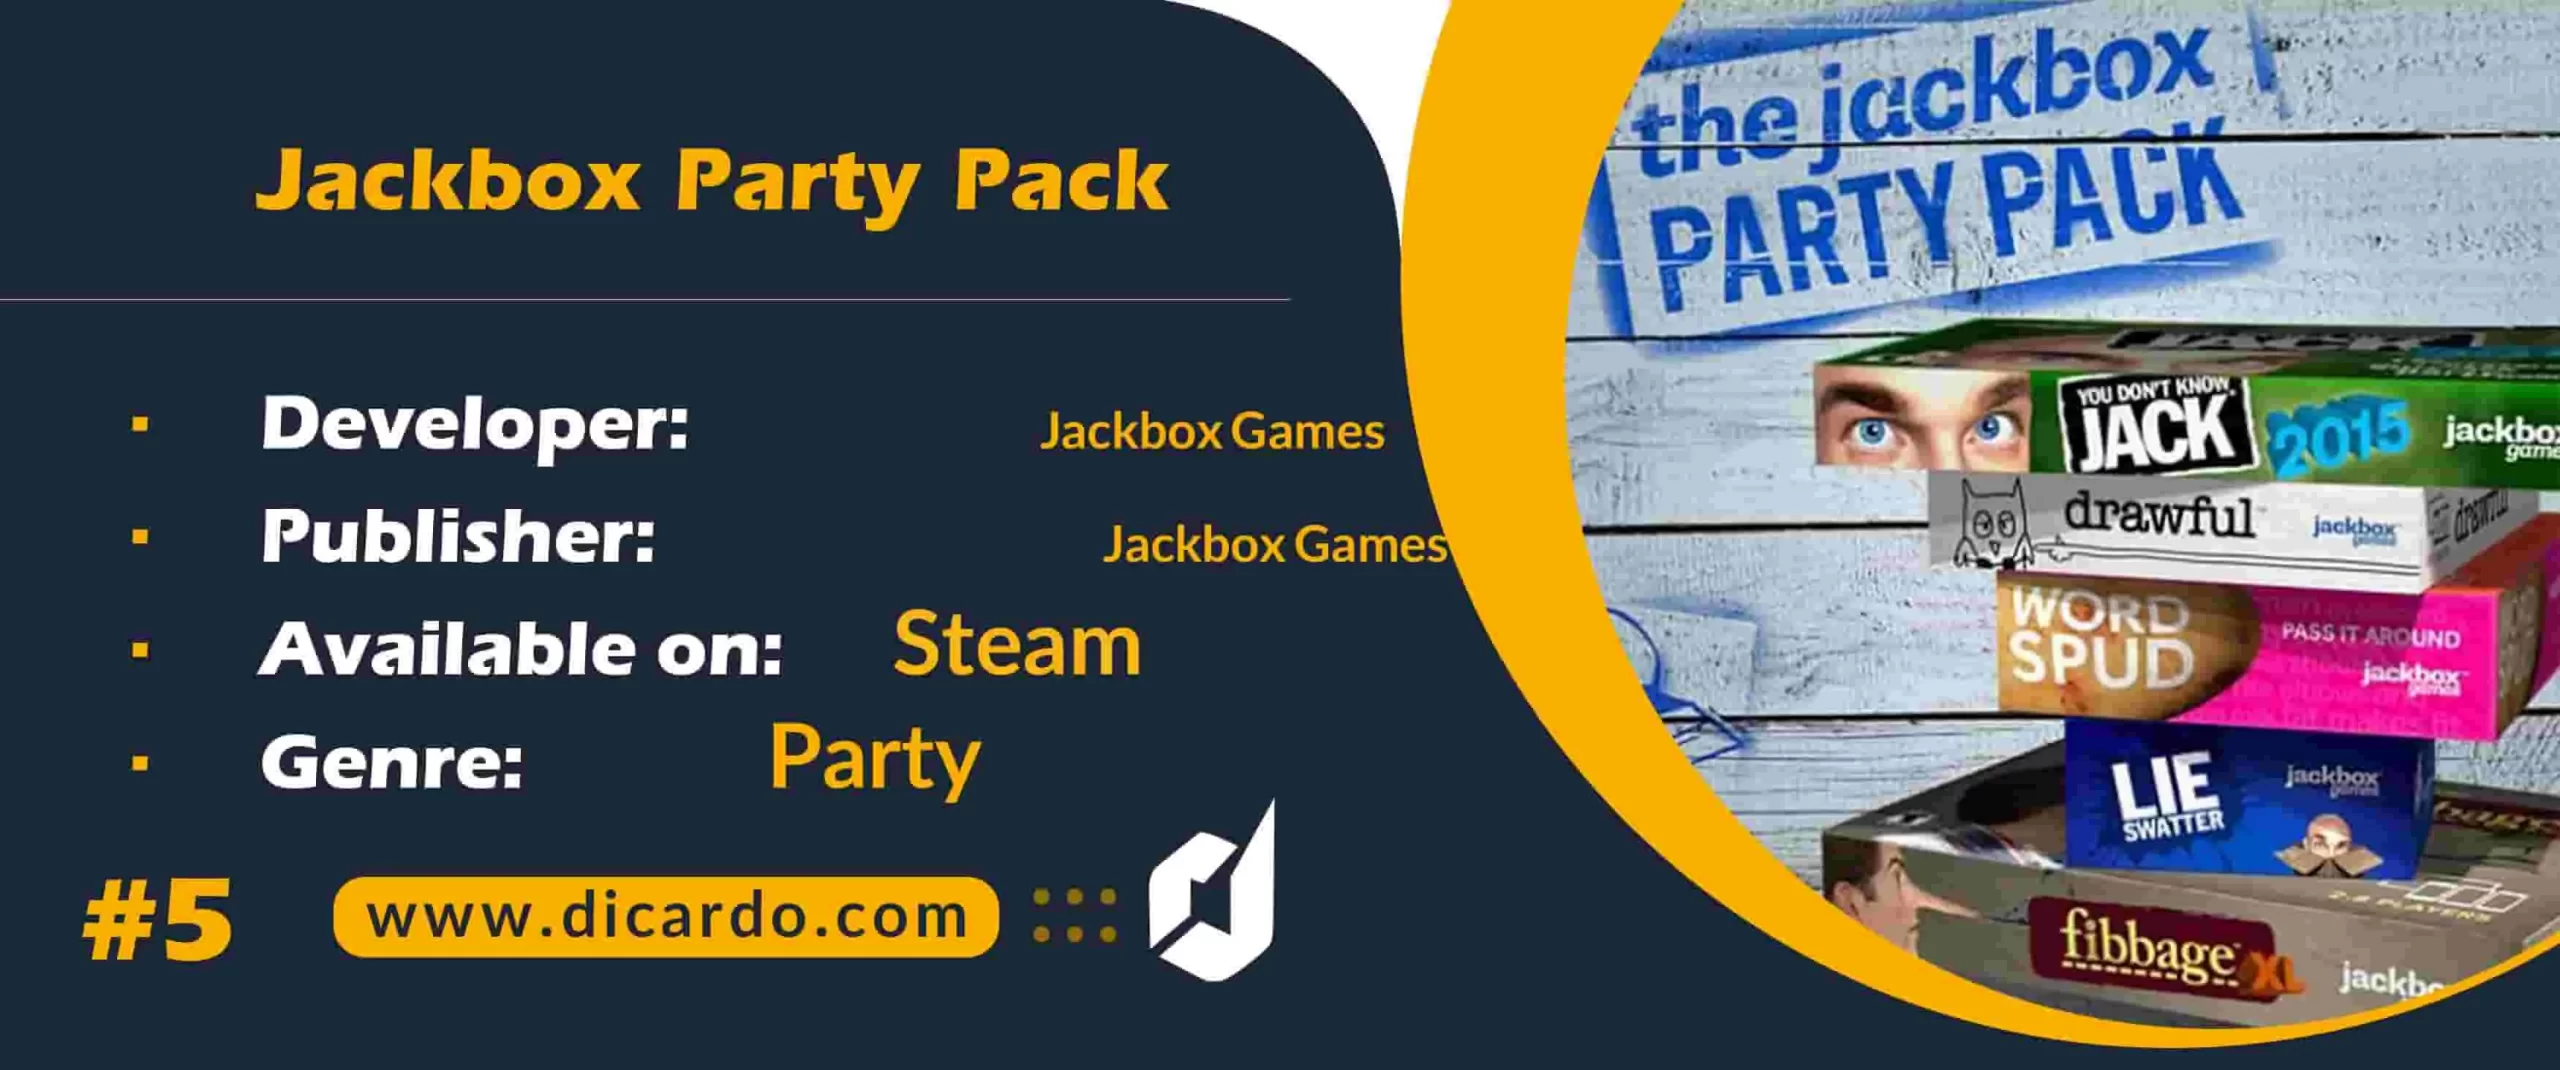 #5 جک باکس پارتی پک Jackbox Party Pack از برترین بازیهای آنلاین چندنفره برای اوقات فراغت